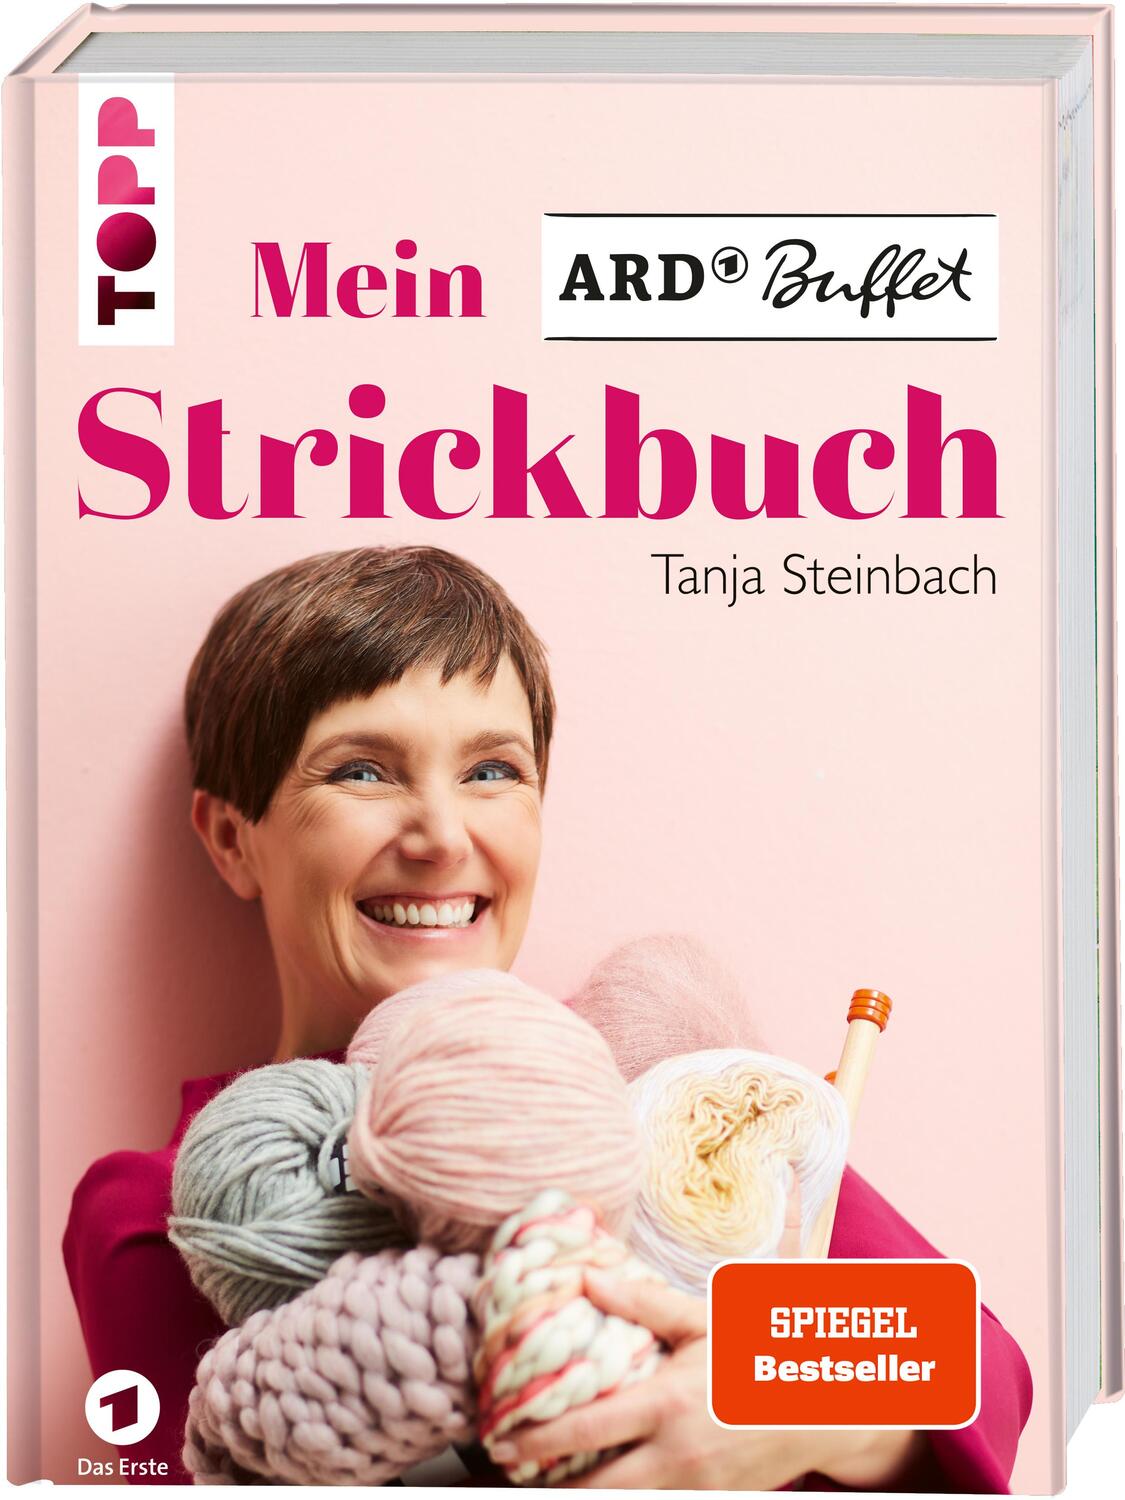 Cover: 9783772481772 | Mein ARD Buffet Strickbuch - SPIEGEL-Bestseller | Tanja Steinbach